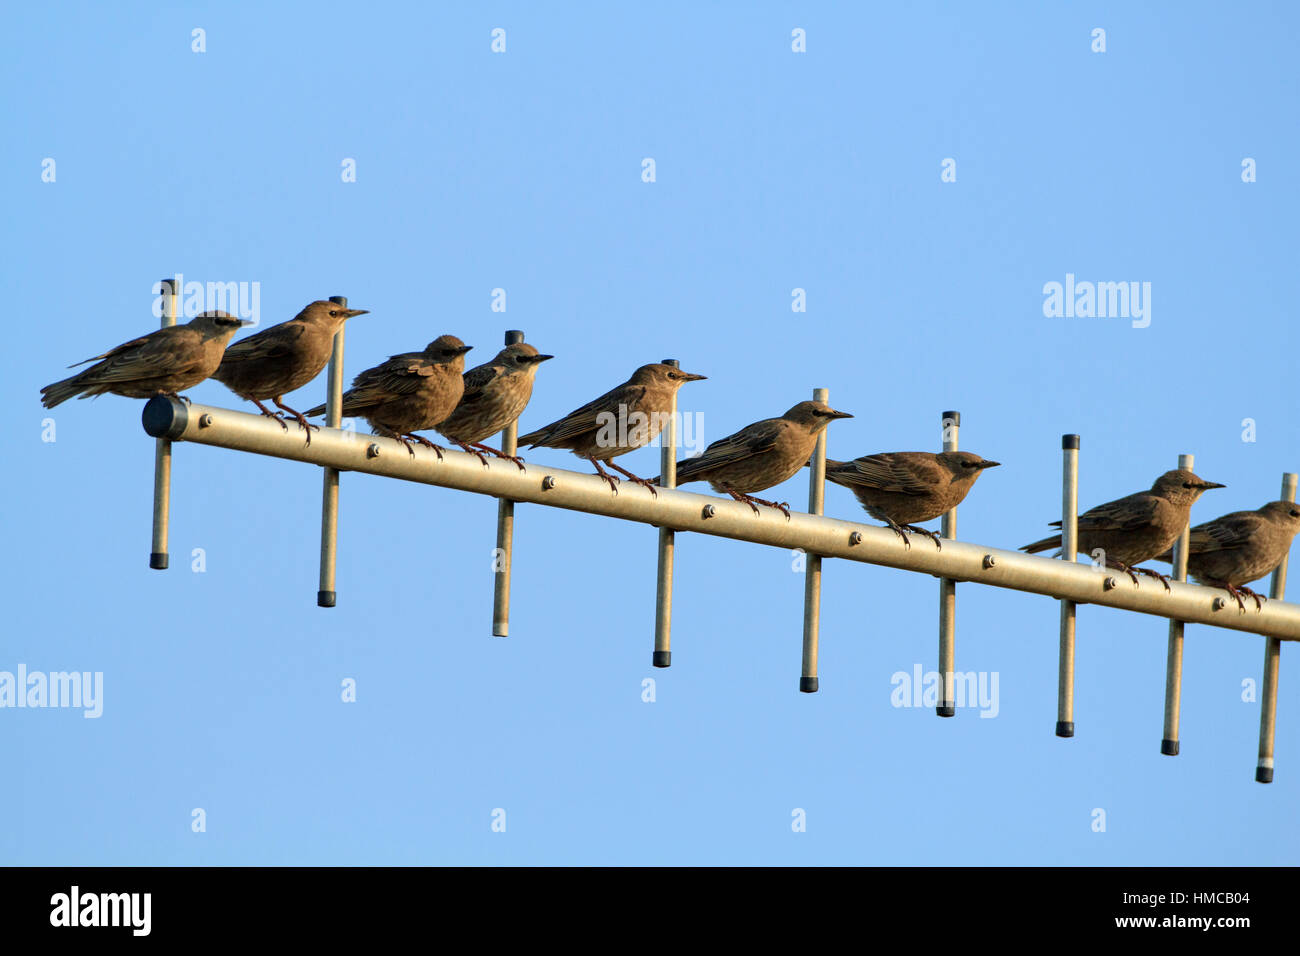 Eine Reihe von 9 jungen Starnen (Sturnus vulgaris), die sich entlang einer Fernsehantenne mit klarem blauem Himmel thront. Stockfoto